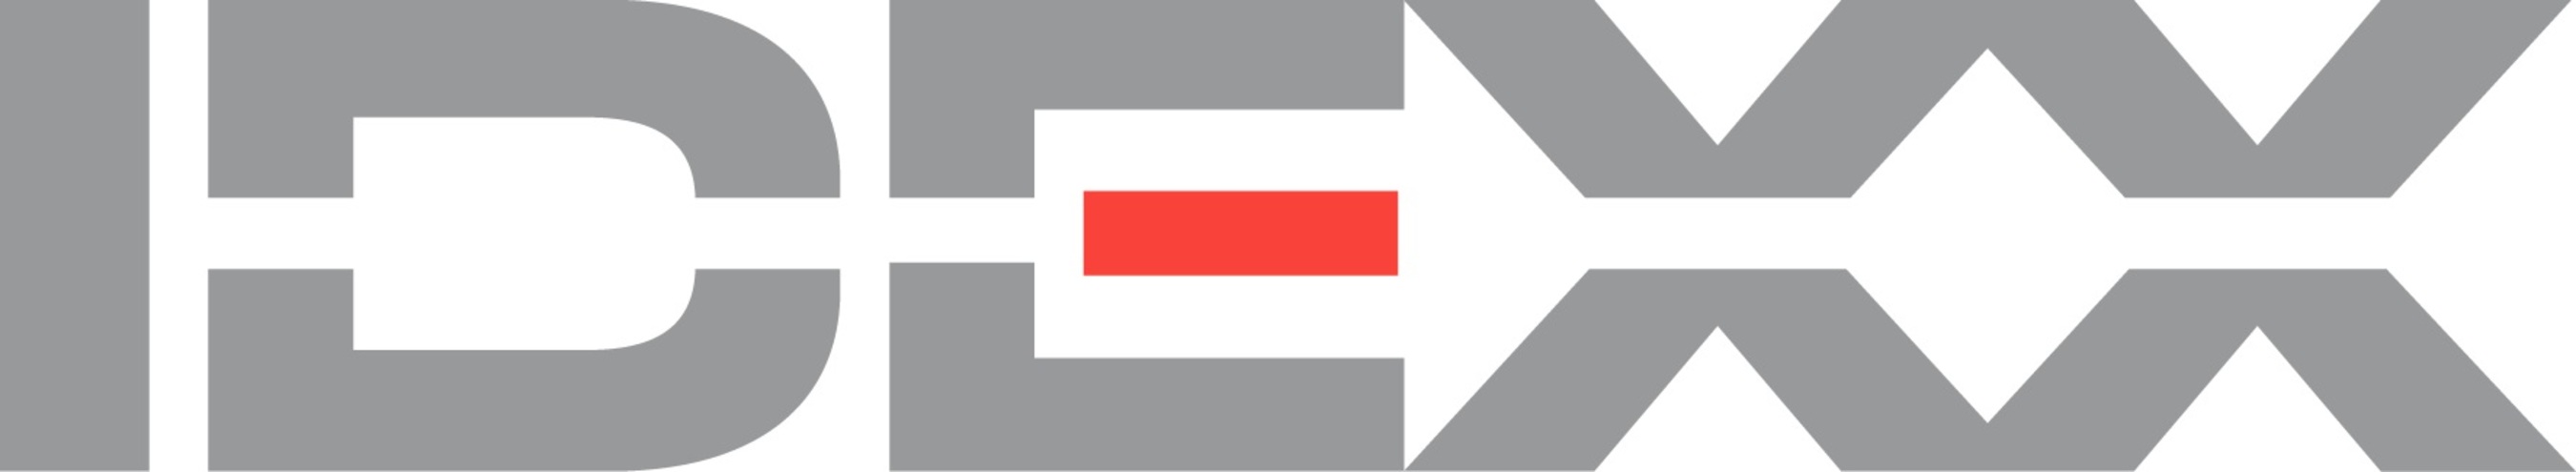 IDEXX Laboratories, Inc. logo